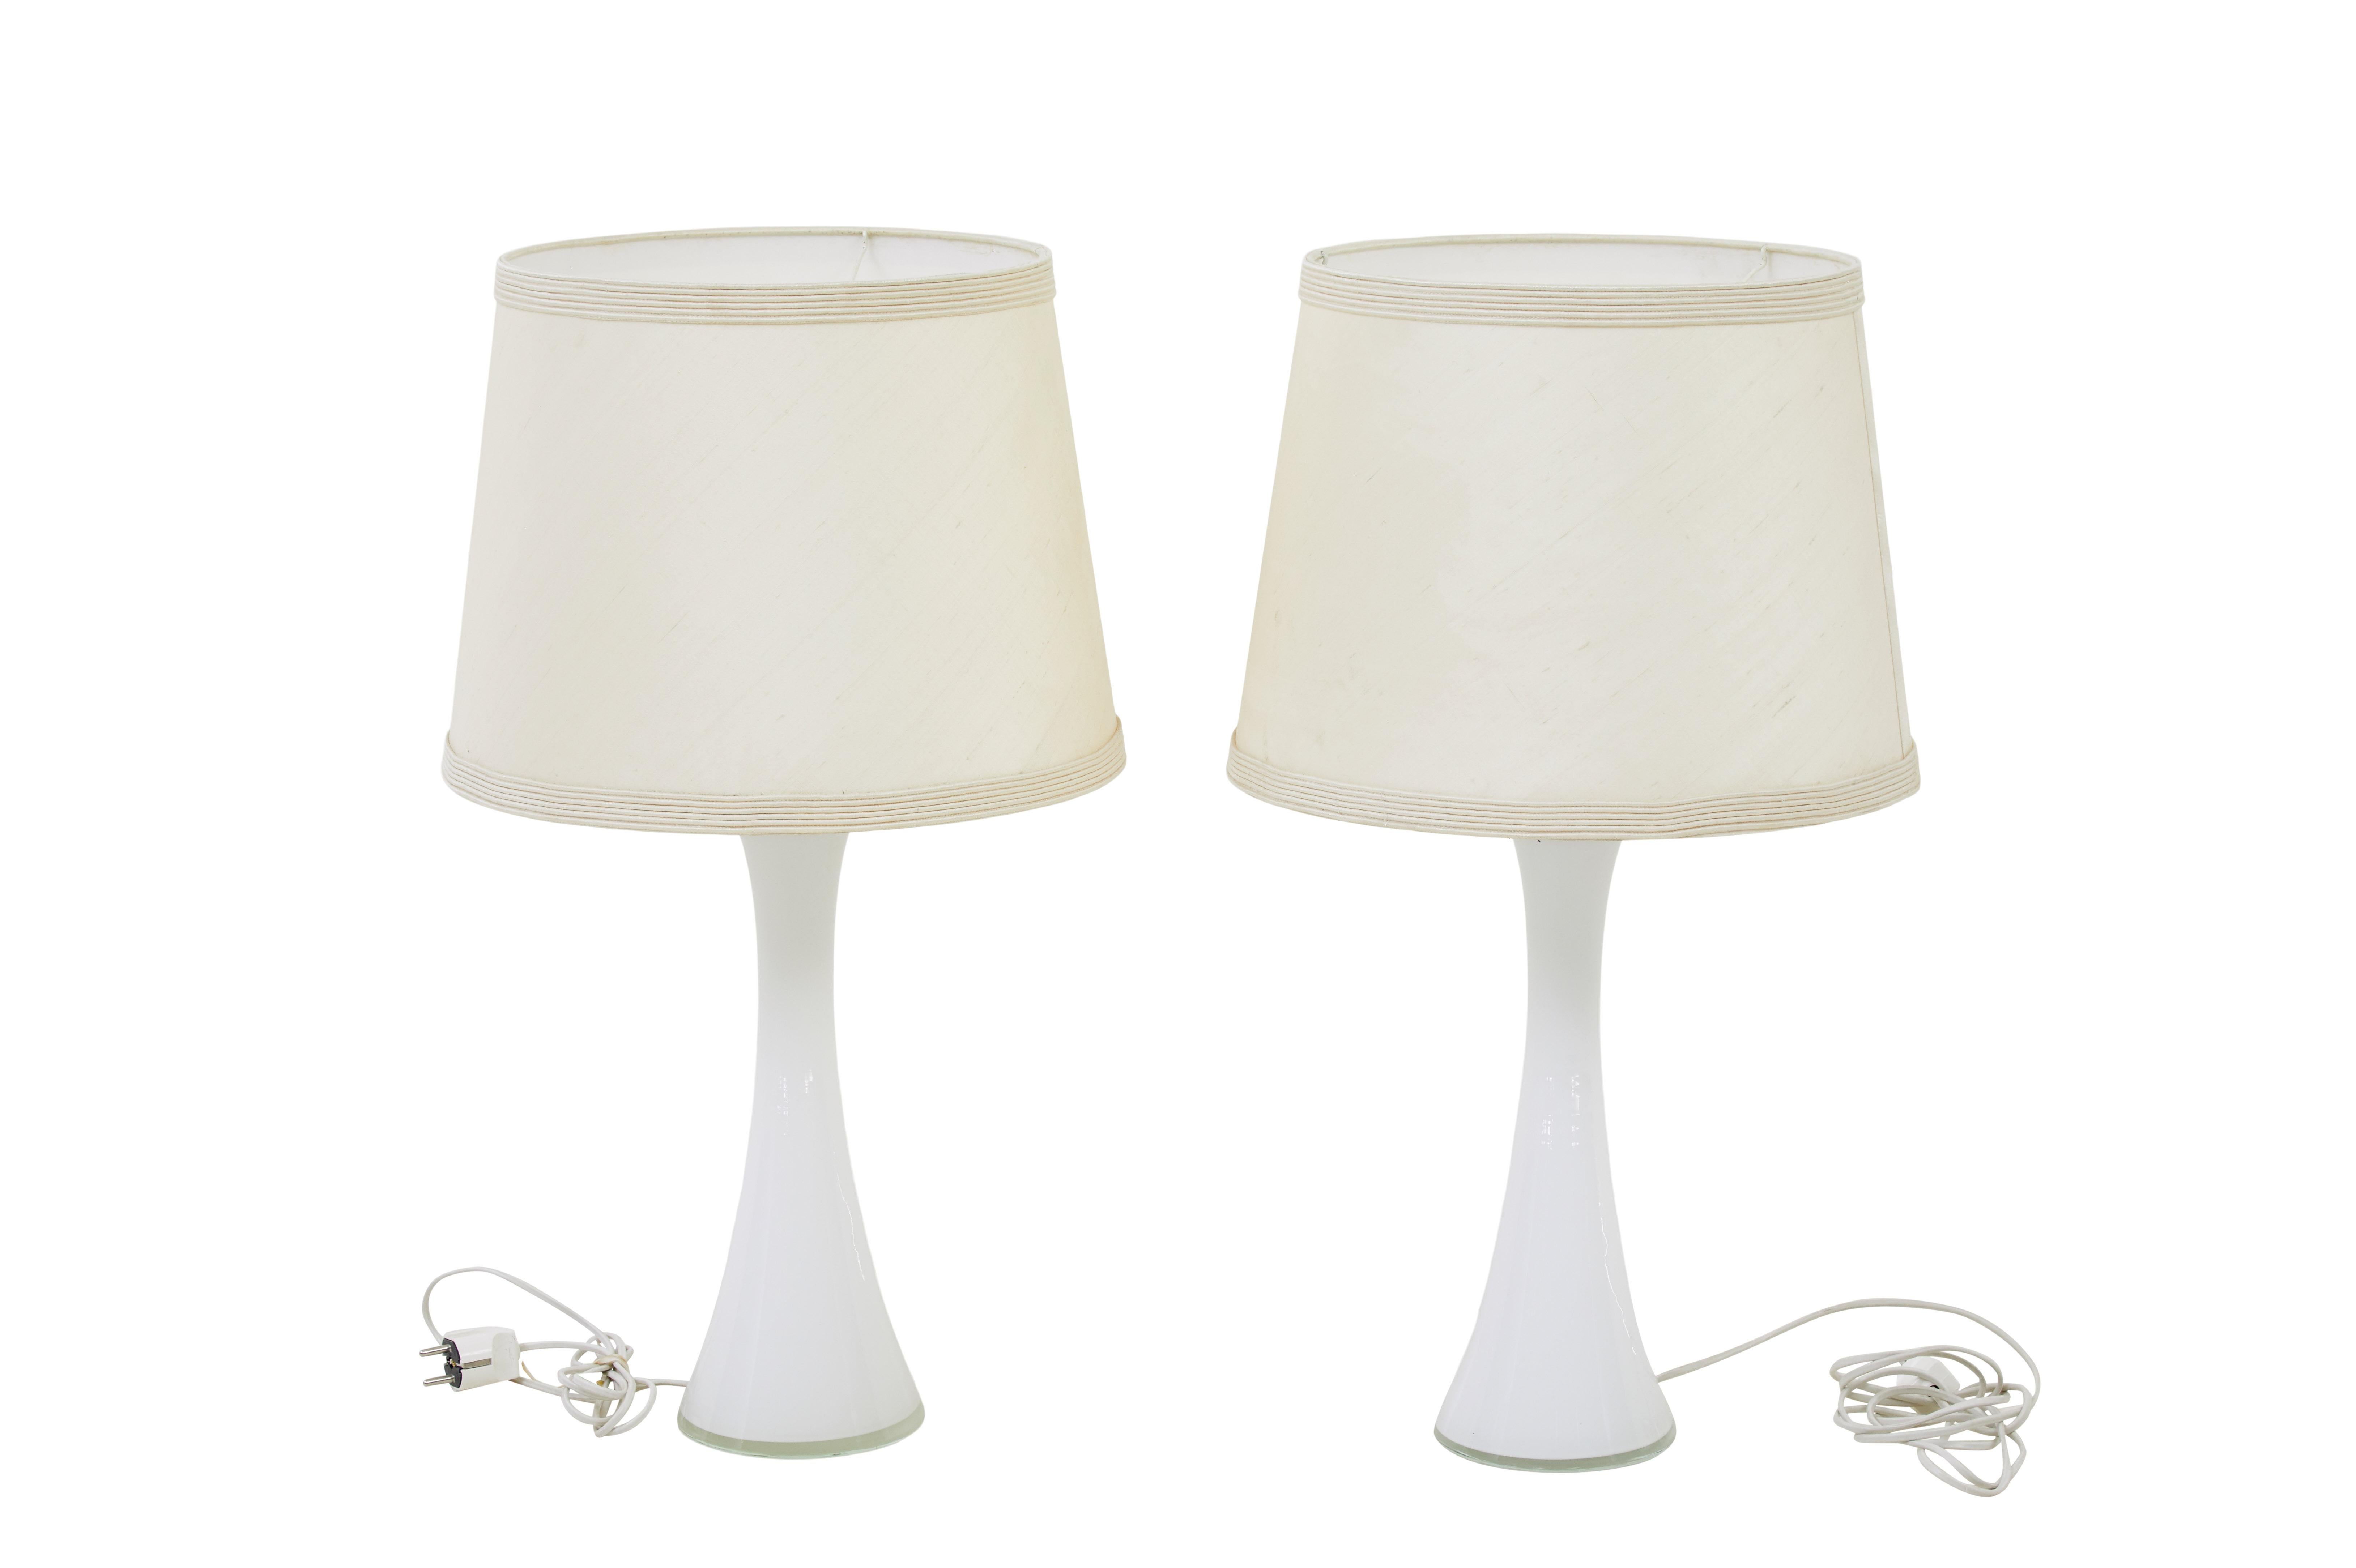 Paire de lampes de table en verre blanc des années 1960 par Bergboms circa 1960.

Paire de lampes de table Bergboms de bonne qualité, conçues par Bernt Nordstedt.   En forme de diabolo doux, en verre blanc, avec un collier en teck sur le dessus pour